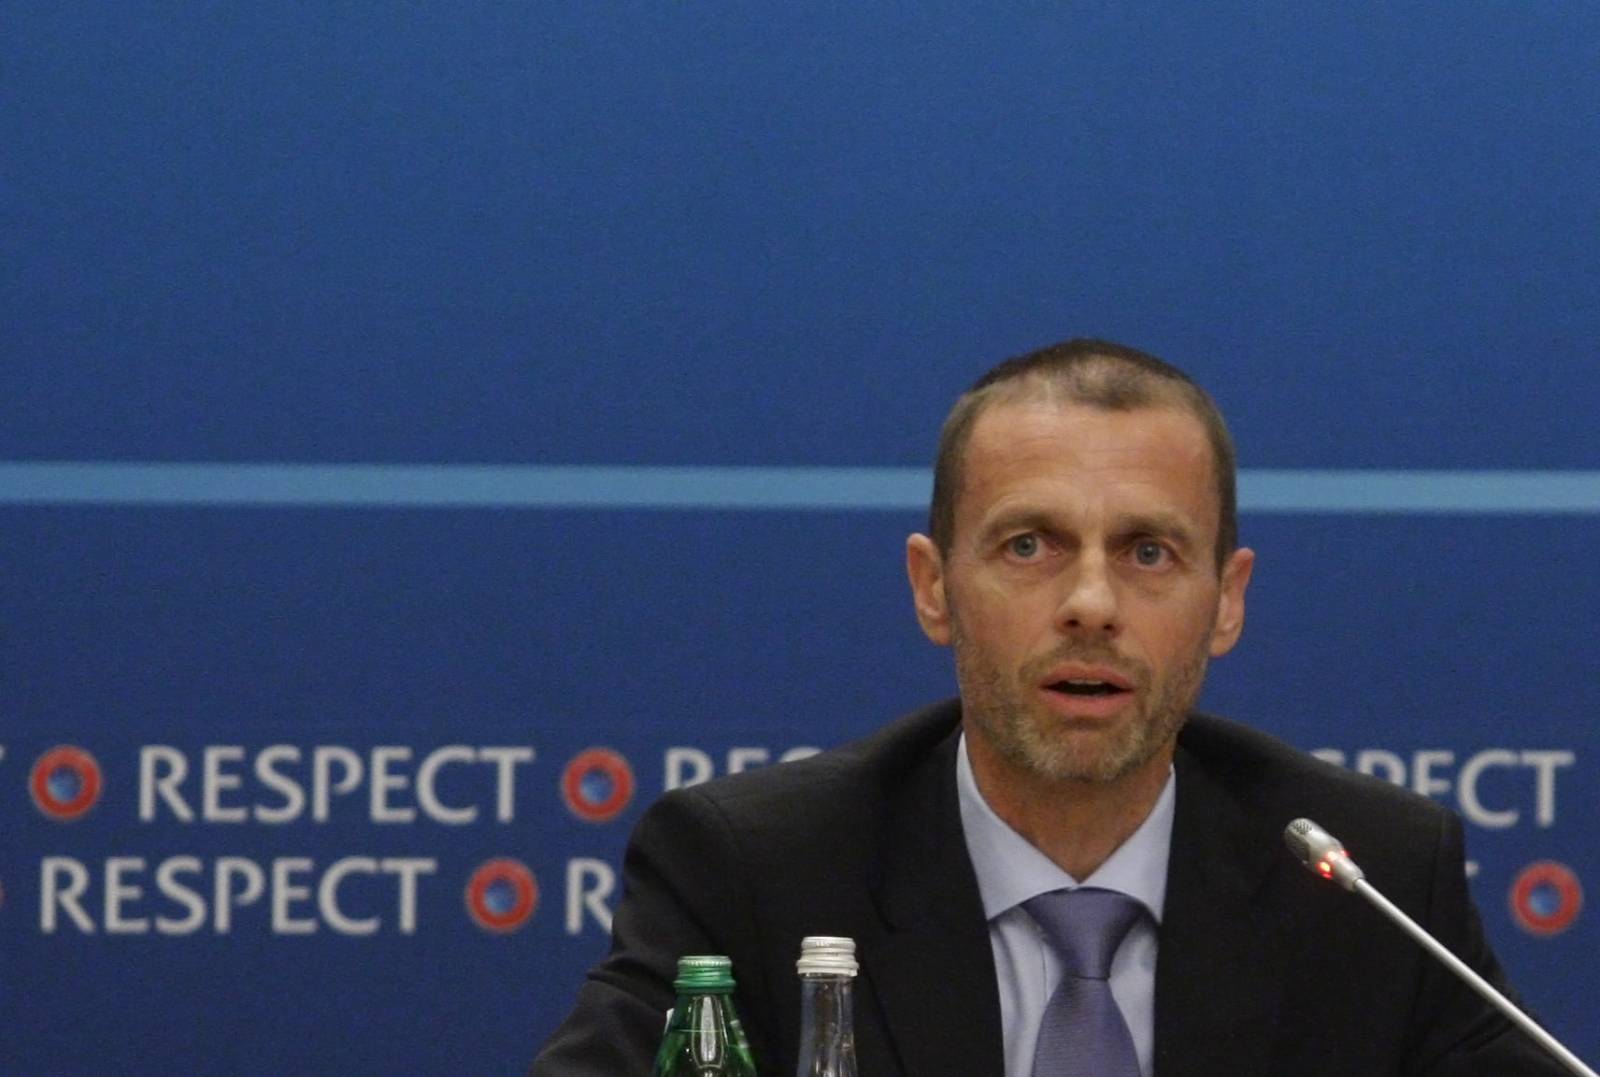 УЕФА подаст иски на 50 миллиардов евро против участников возможной Суперлиги